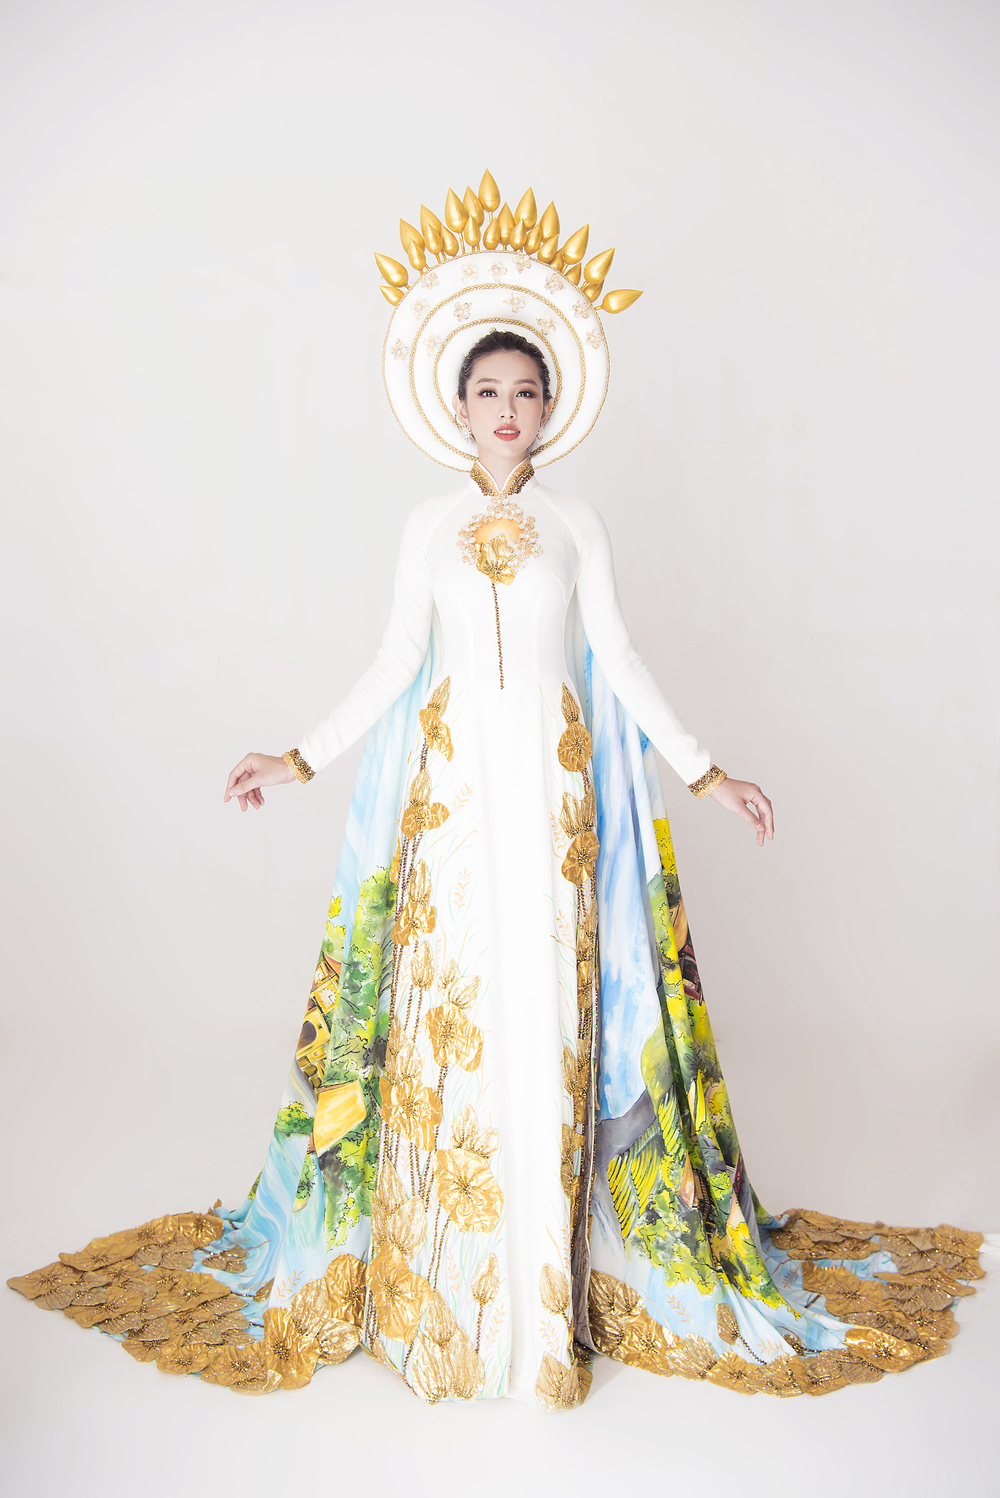 Hé lộ trang phục truyền thống của Nguyễn Thúc Thùy Tiên ở Miss International 2018